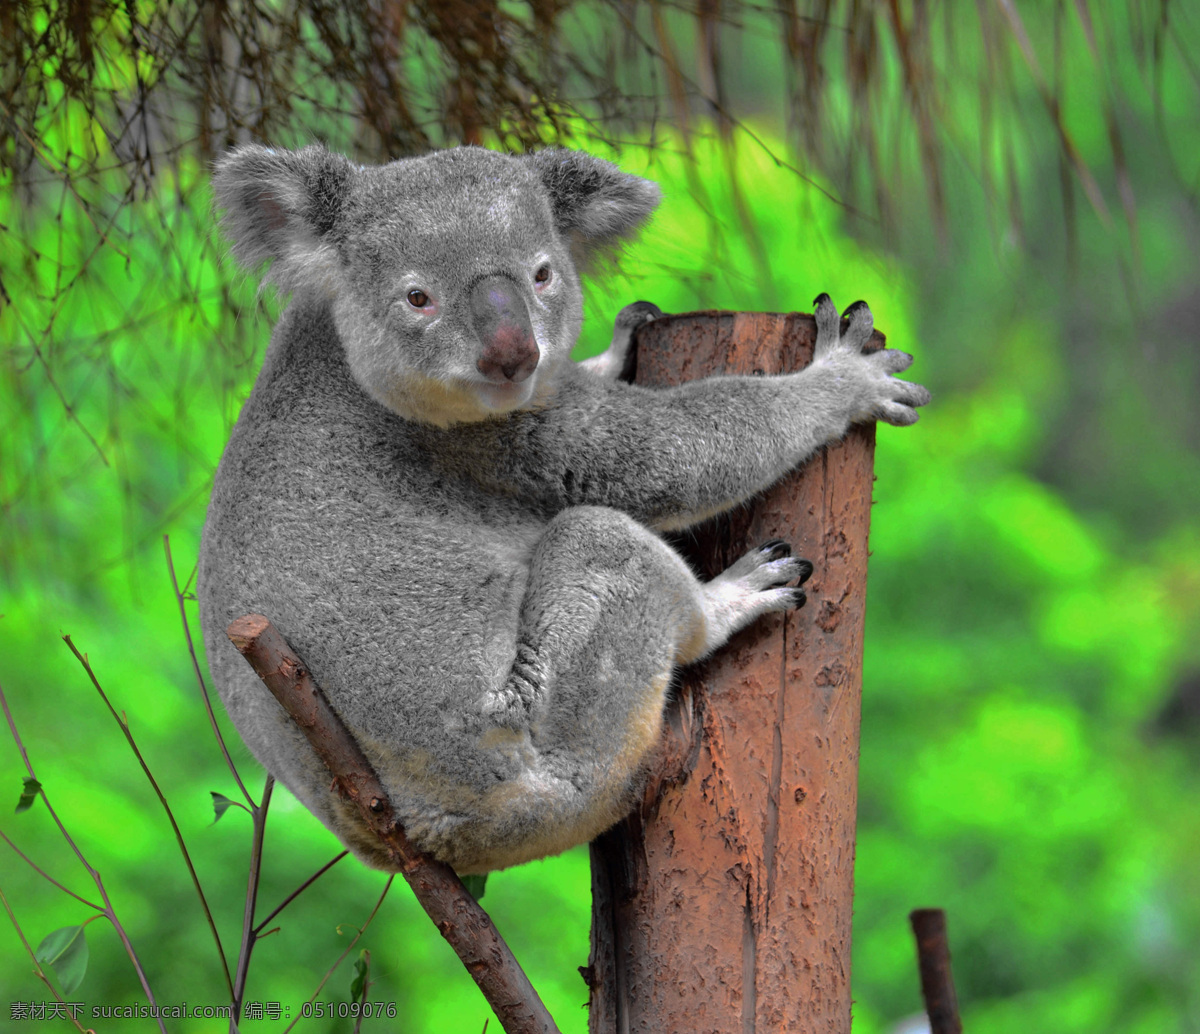 澳大利亚考拉 koala 澳大利树袋熊 考拉 树袋熊 无尾熊 树熊 澳大利亚国宝 澳洲国宝 房地产 户外广告 报纸 海报 沉睡 路边 精美图片 生物世界 野生动物